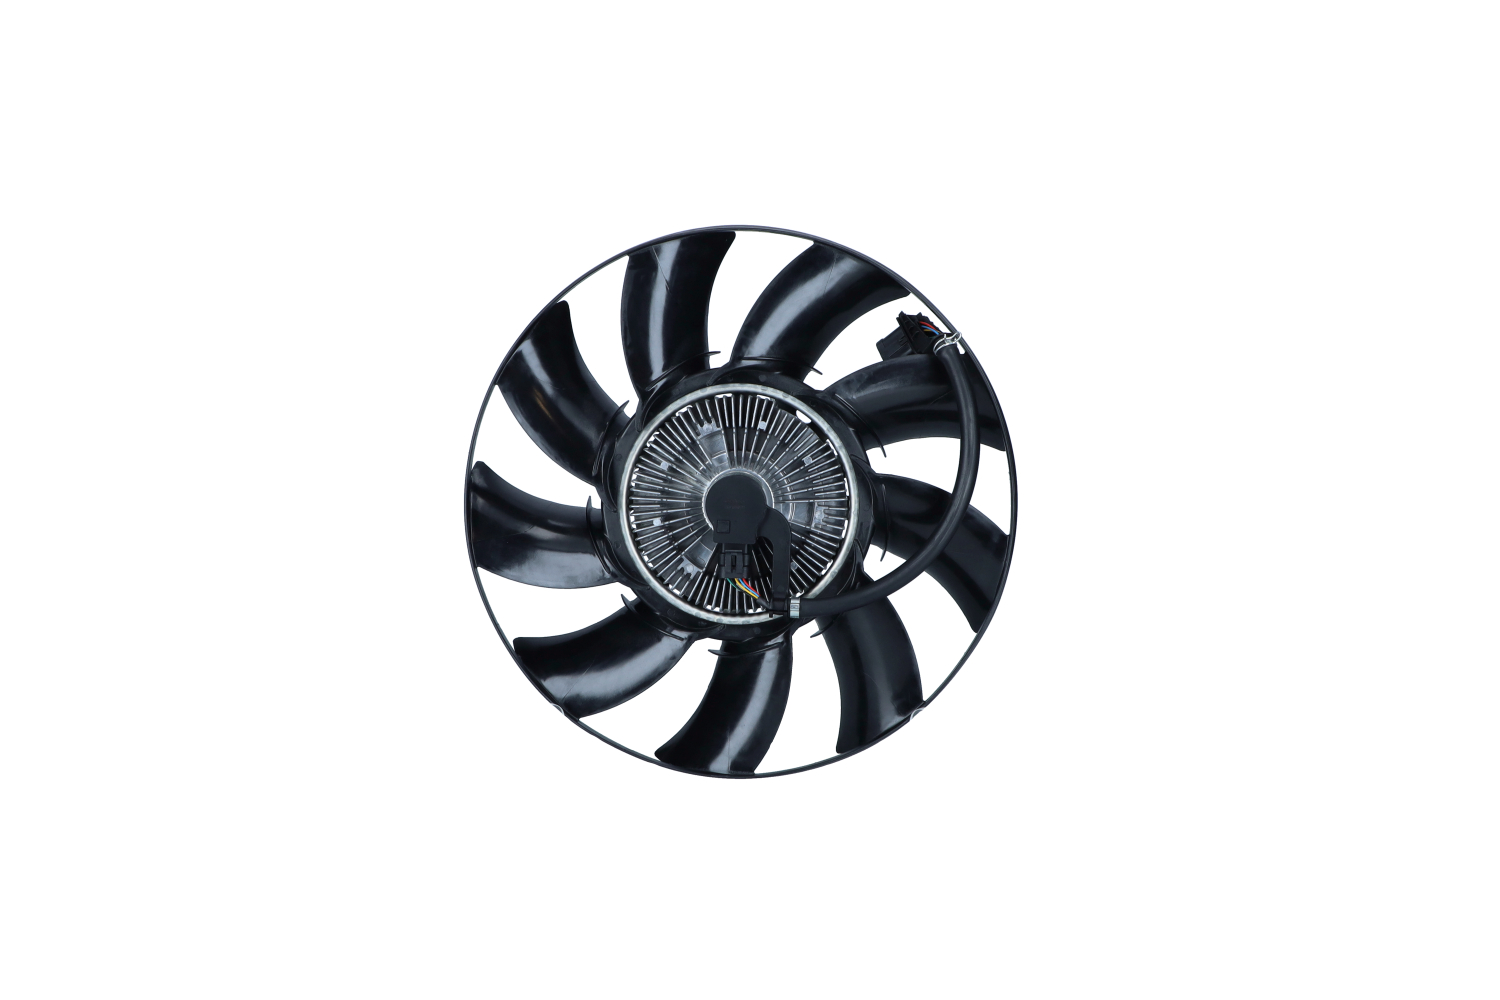 NRF 12V, without radiator fan shroud Cooling Fan 47874 buy